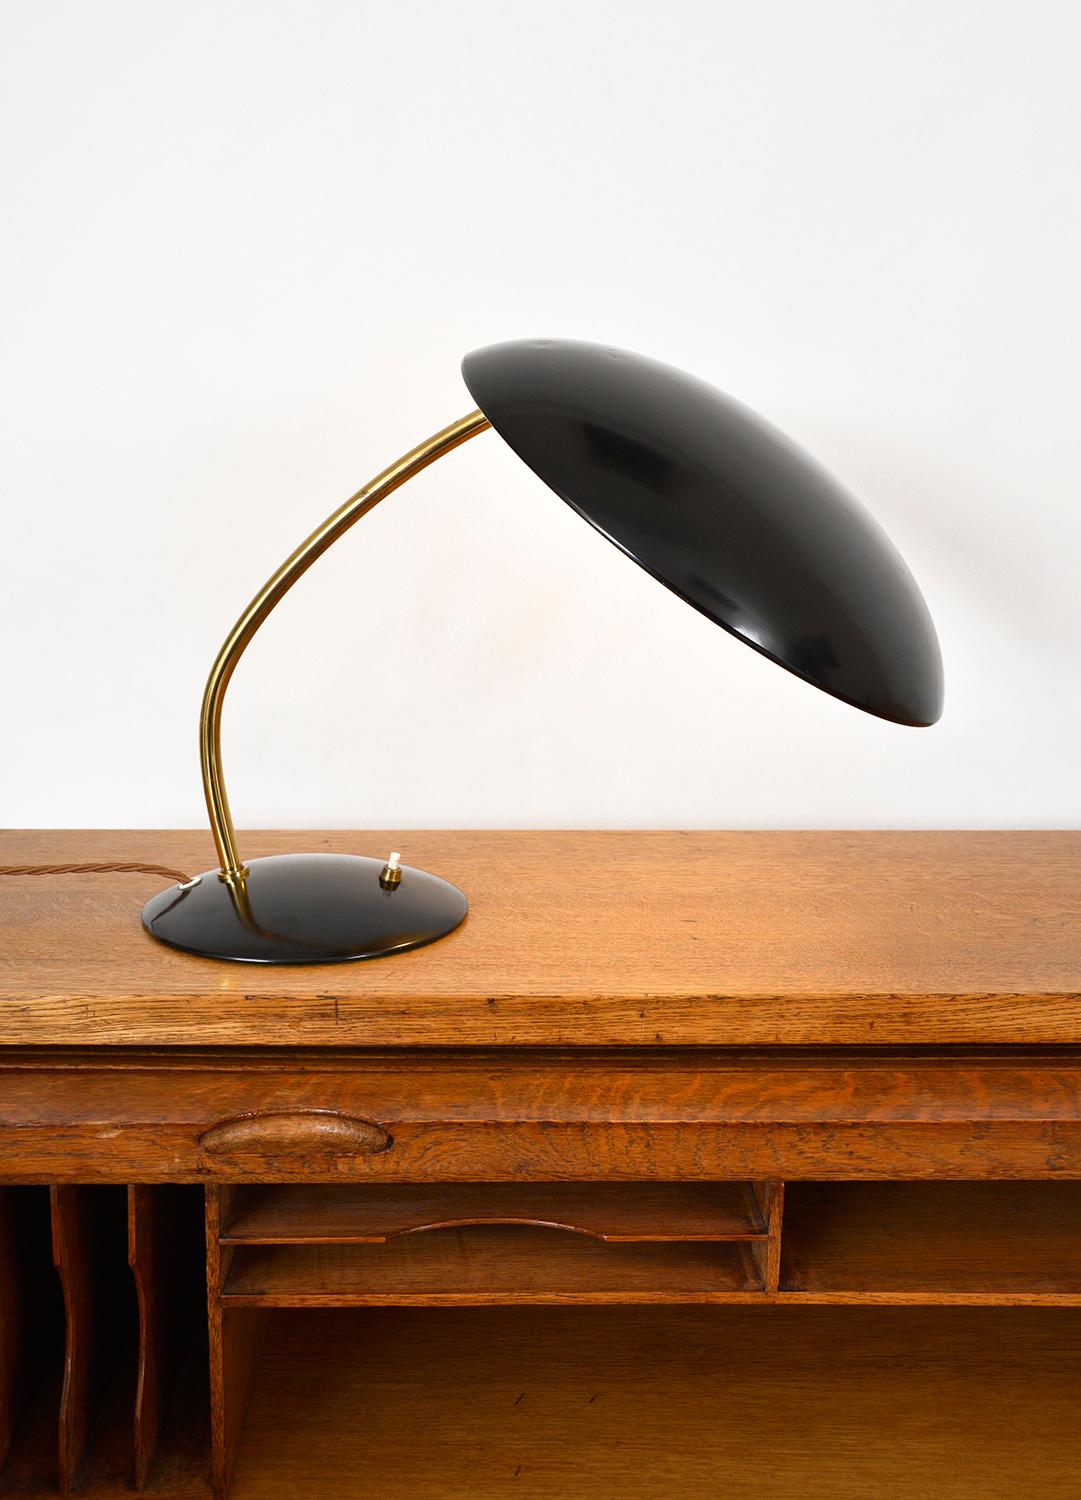 Enameled Midcentury Kaiser Idell Desk Task Lamp by Christian Dell Model 6782 German 1950s For Sale